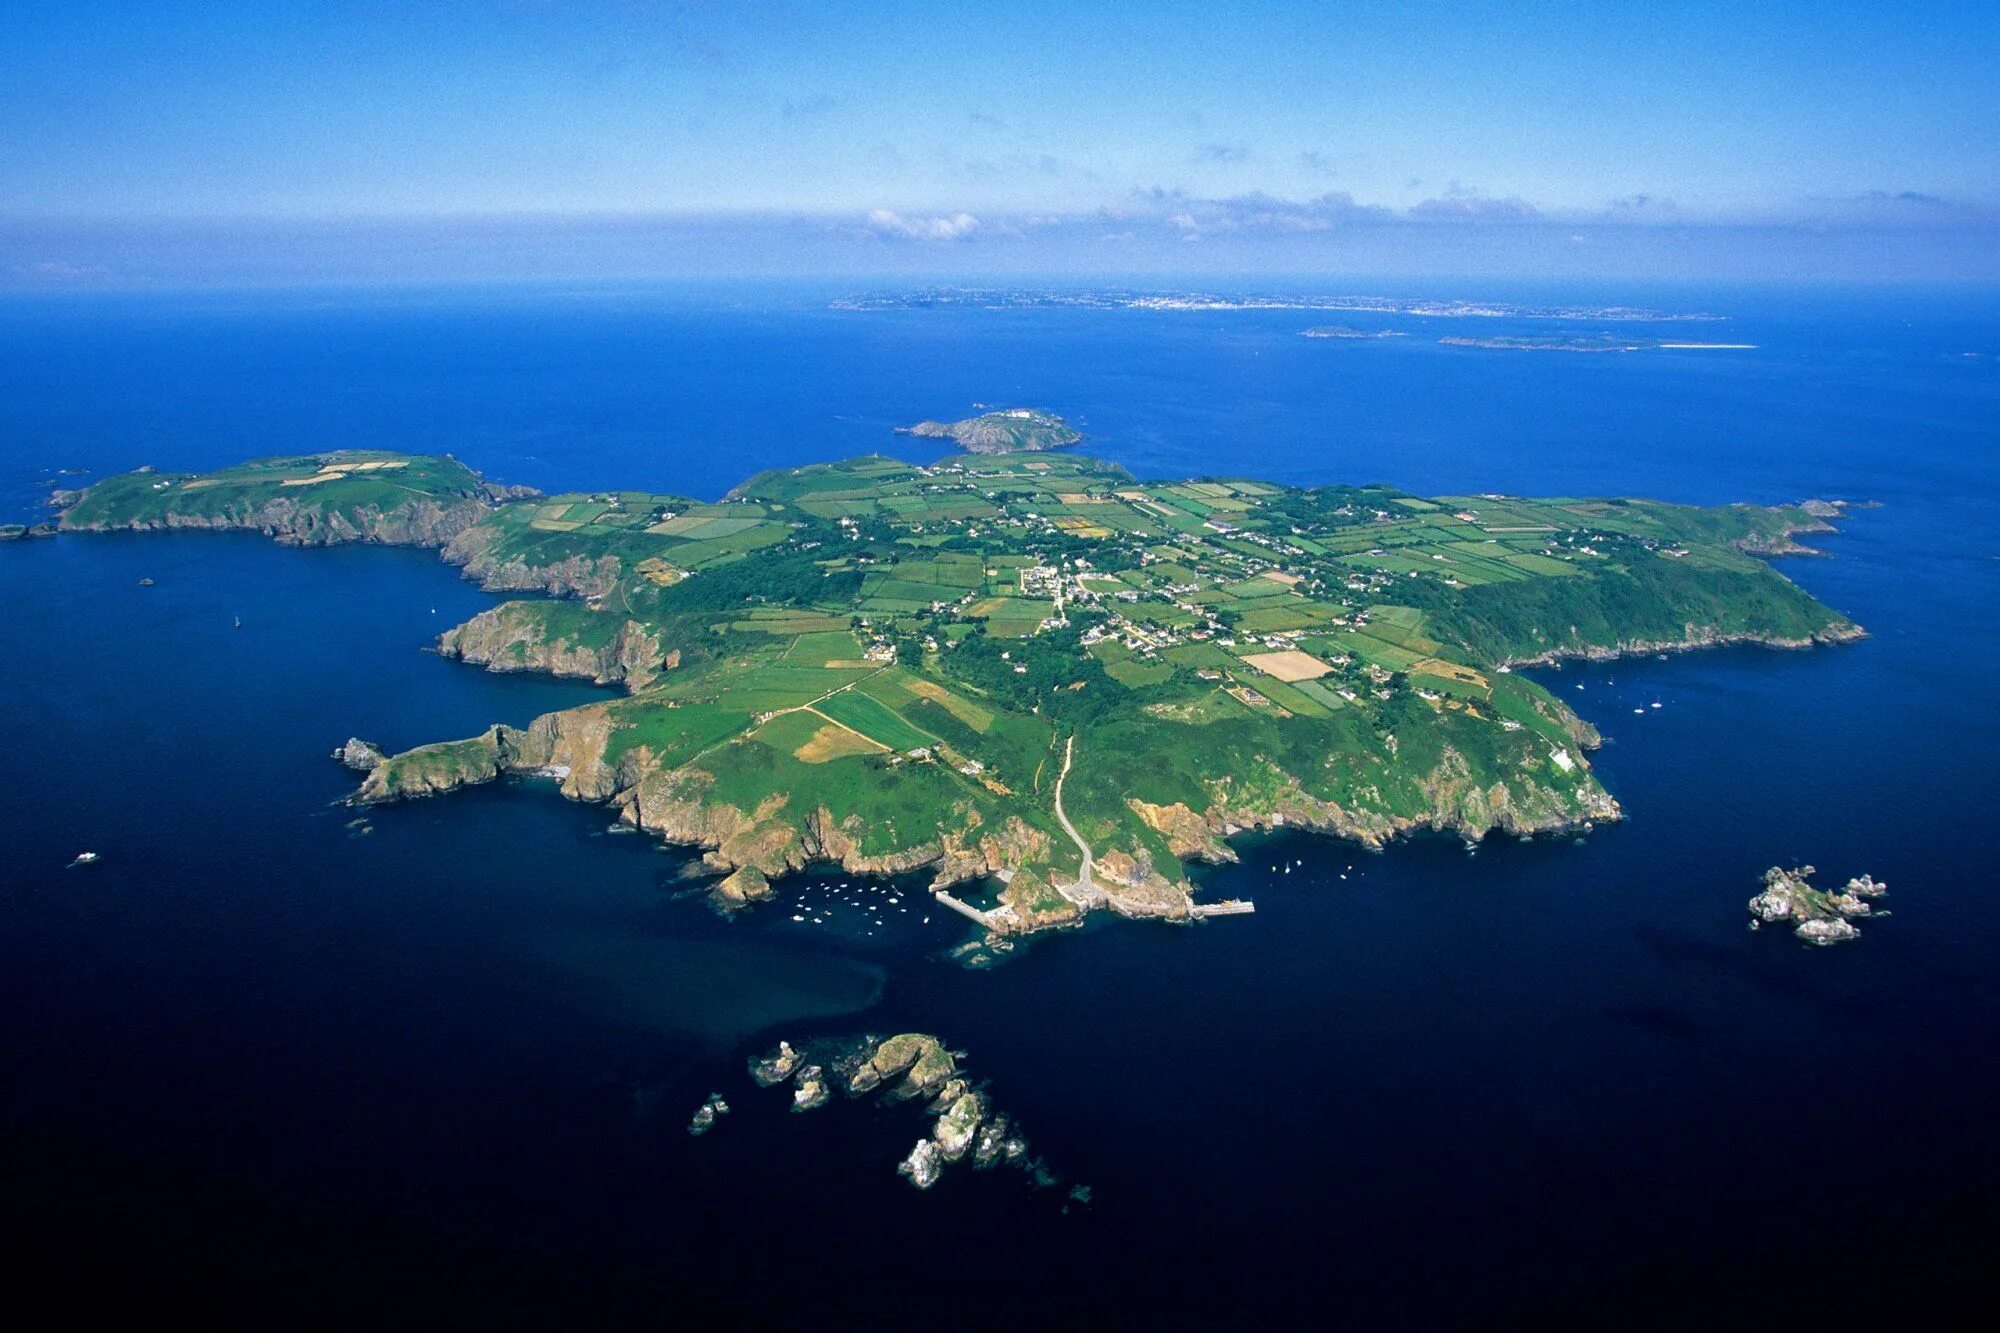 Open island. Остров Сарк нормандские острова. Остров джерси ла Манш. Джерси остров в проливе ла-Манш. Нормандские острова джерси.